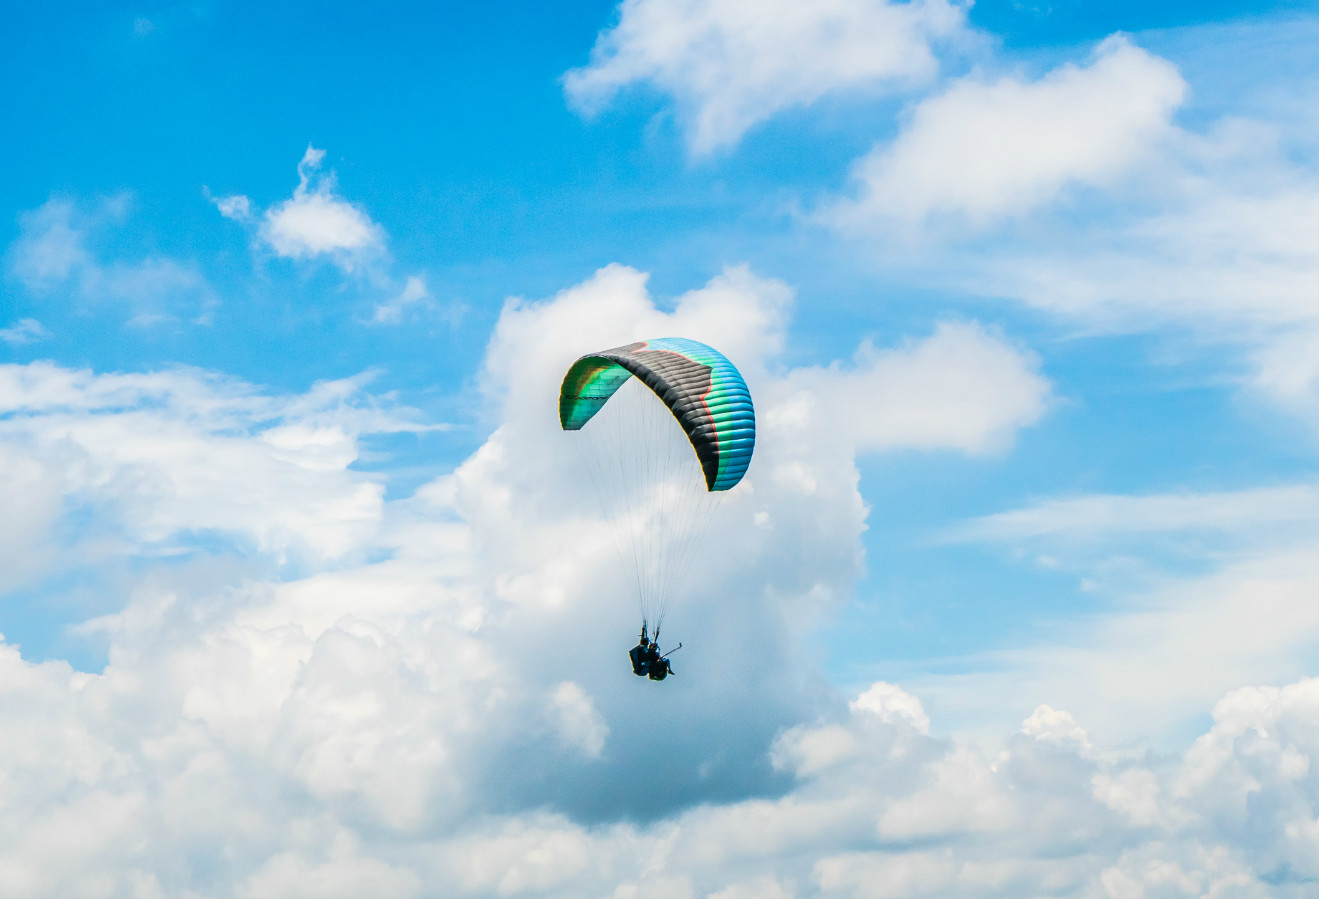 尼泊尔民航局暂停单人滑翔伞项目